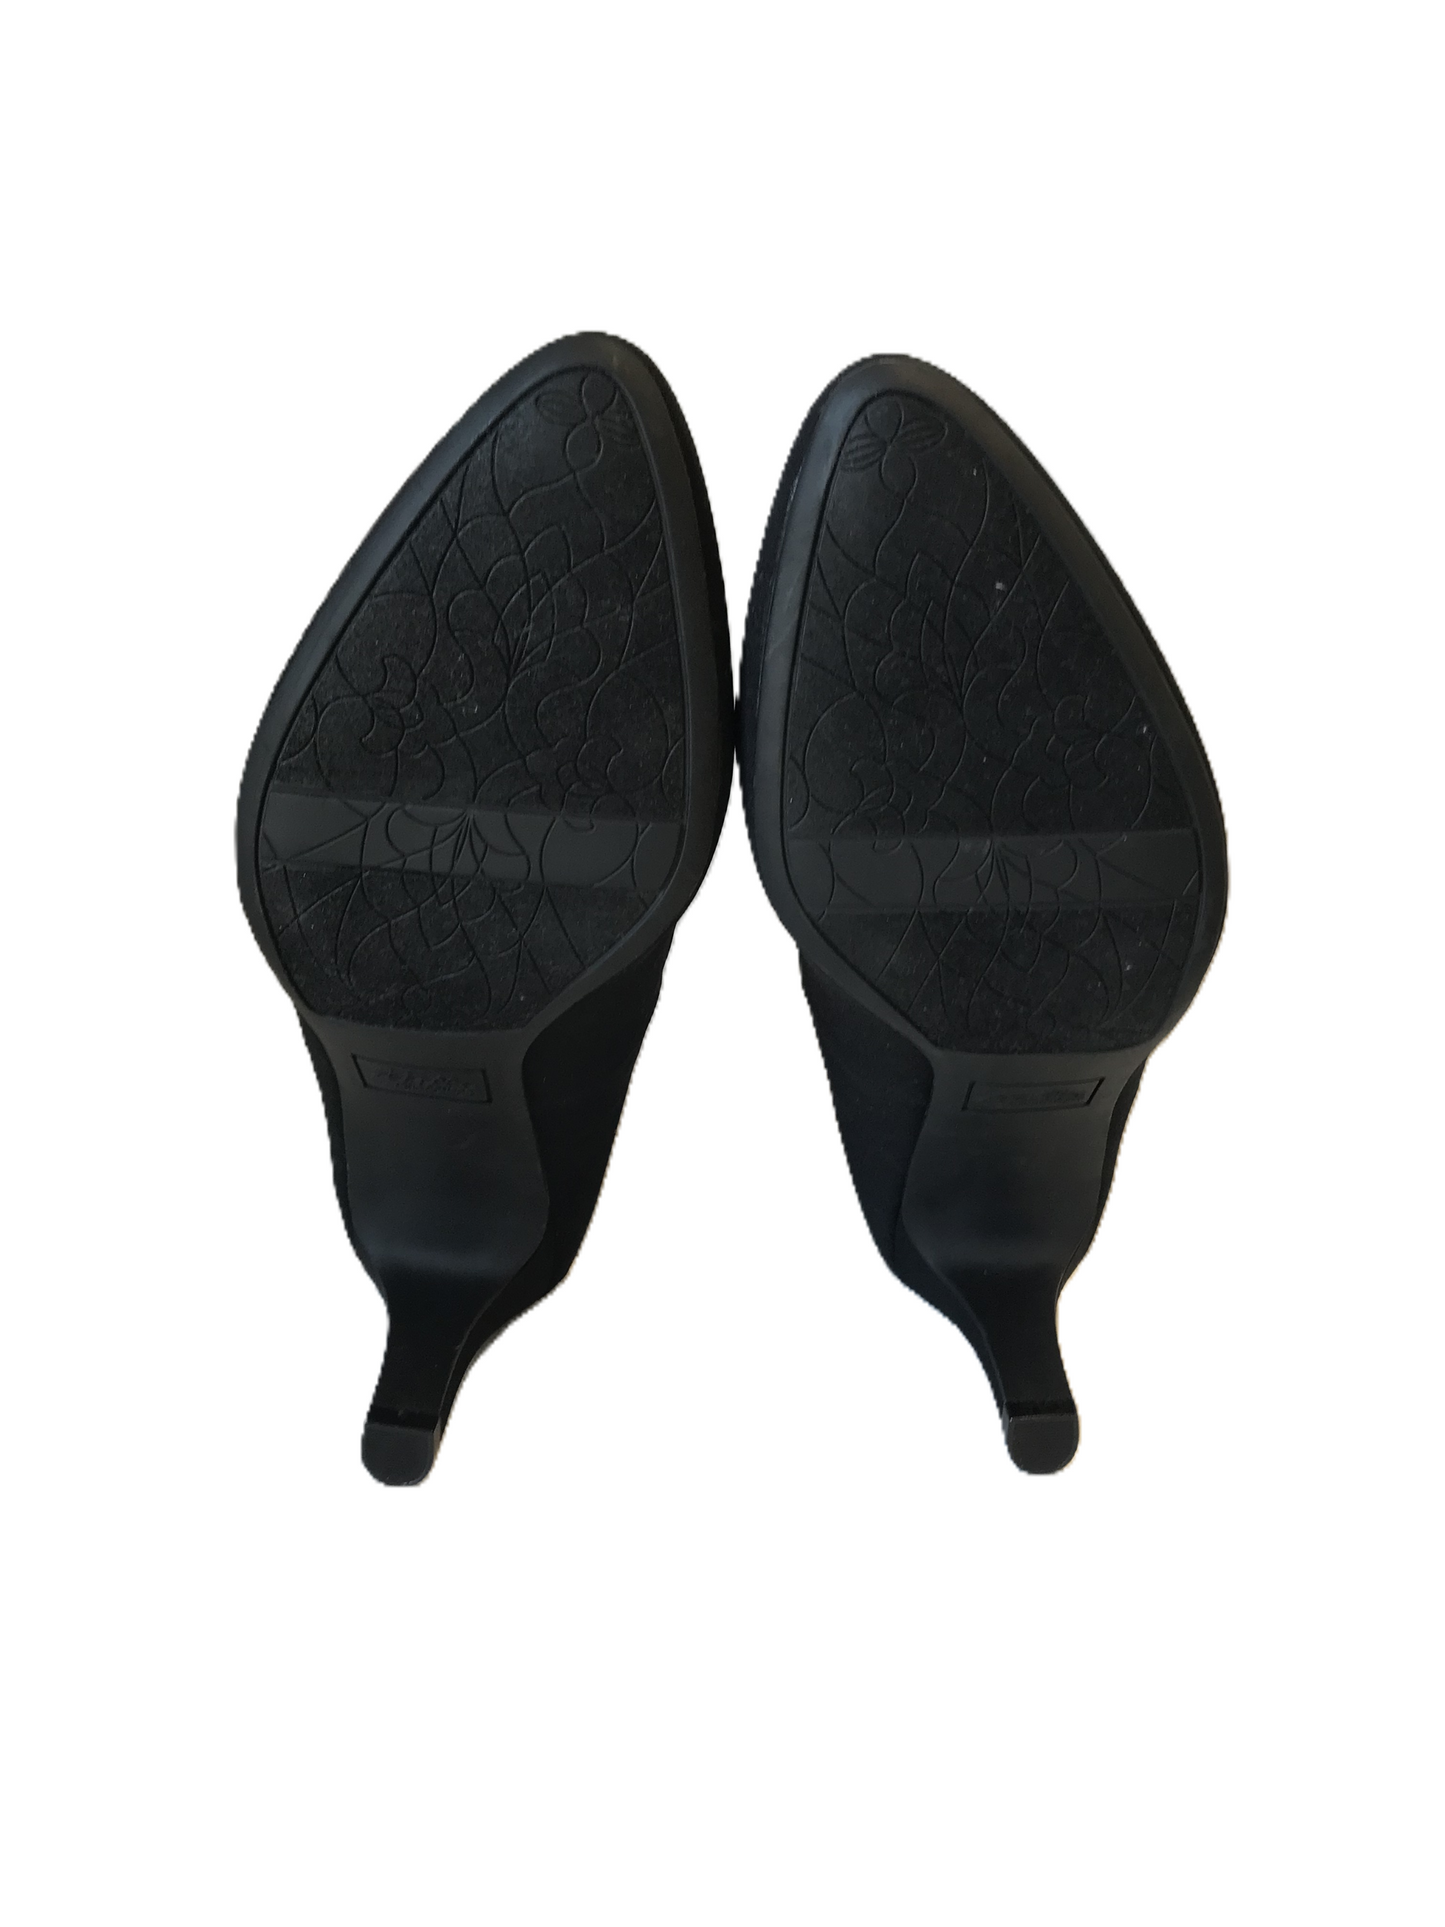 Black Shoes Heels Kitten By Abella Size: 10